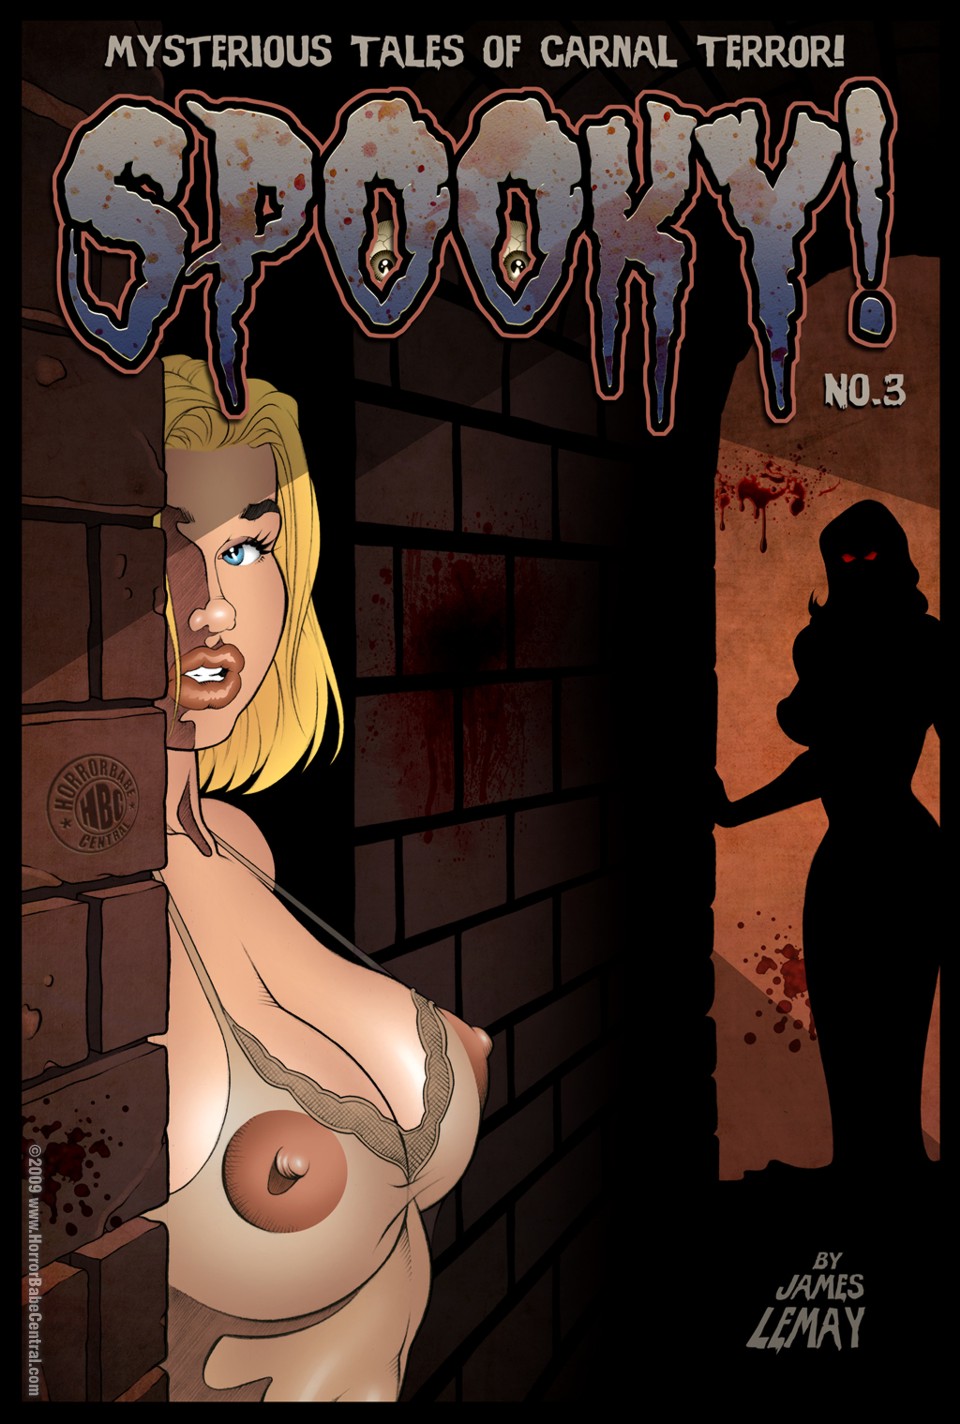 Porn Comics - Spooky 1-2 James Lemay porn comics 8 muses